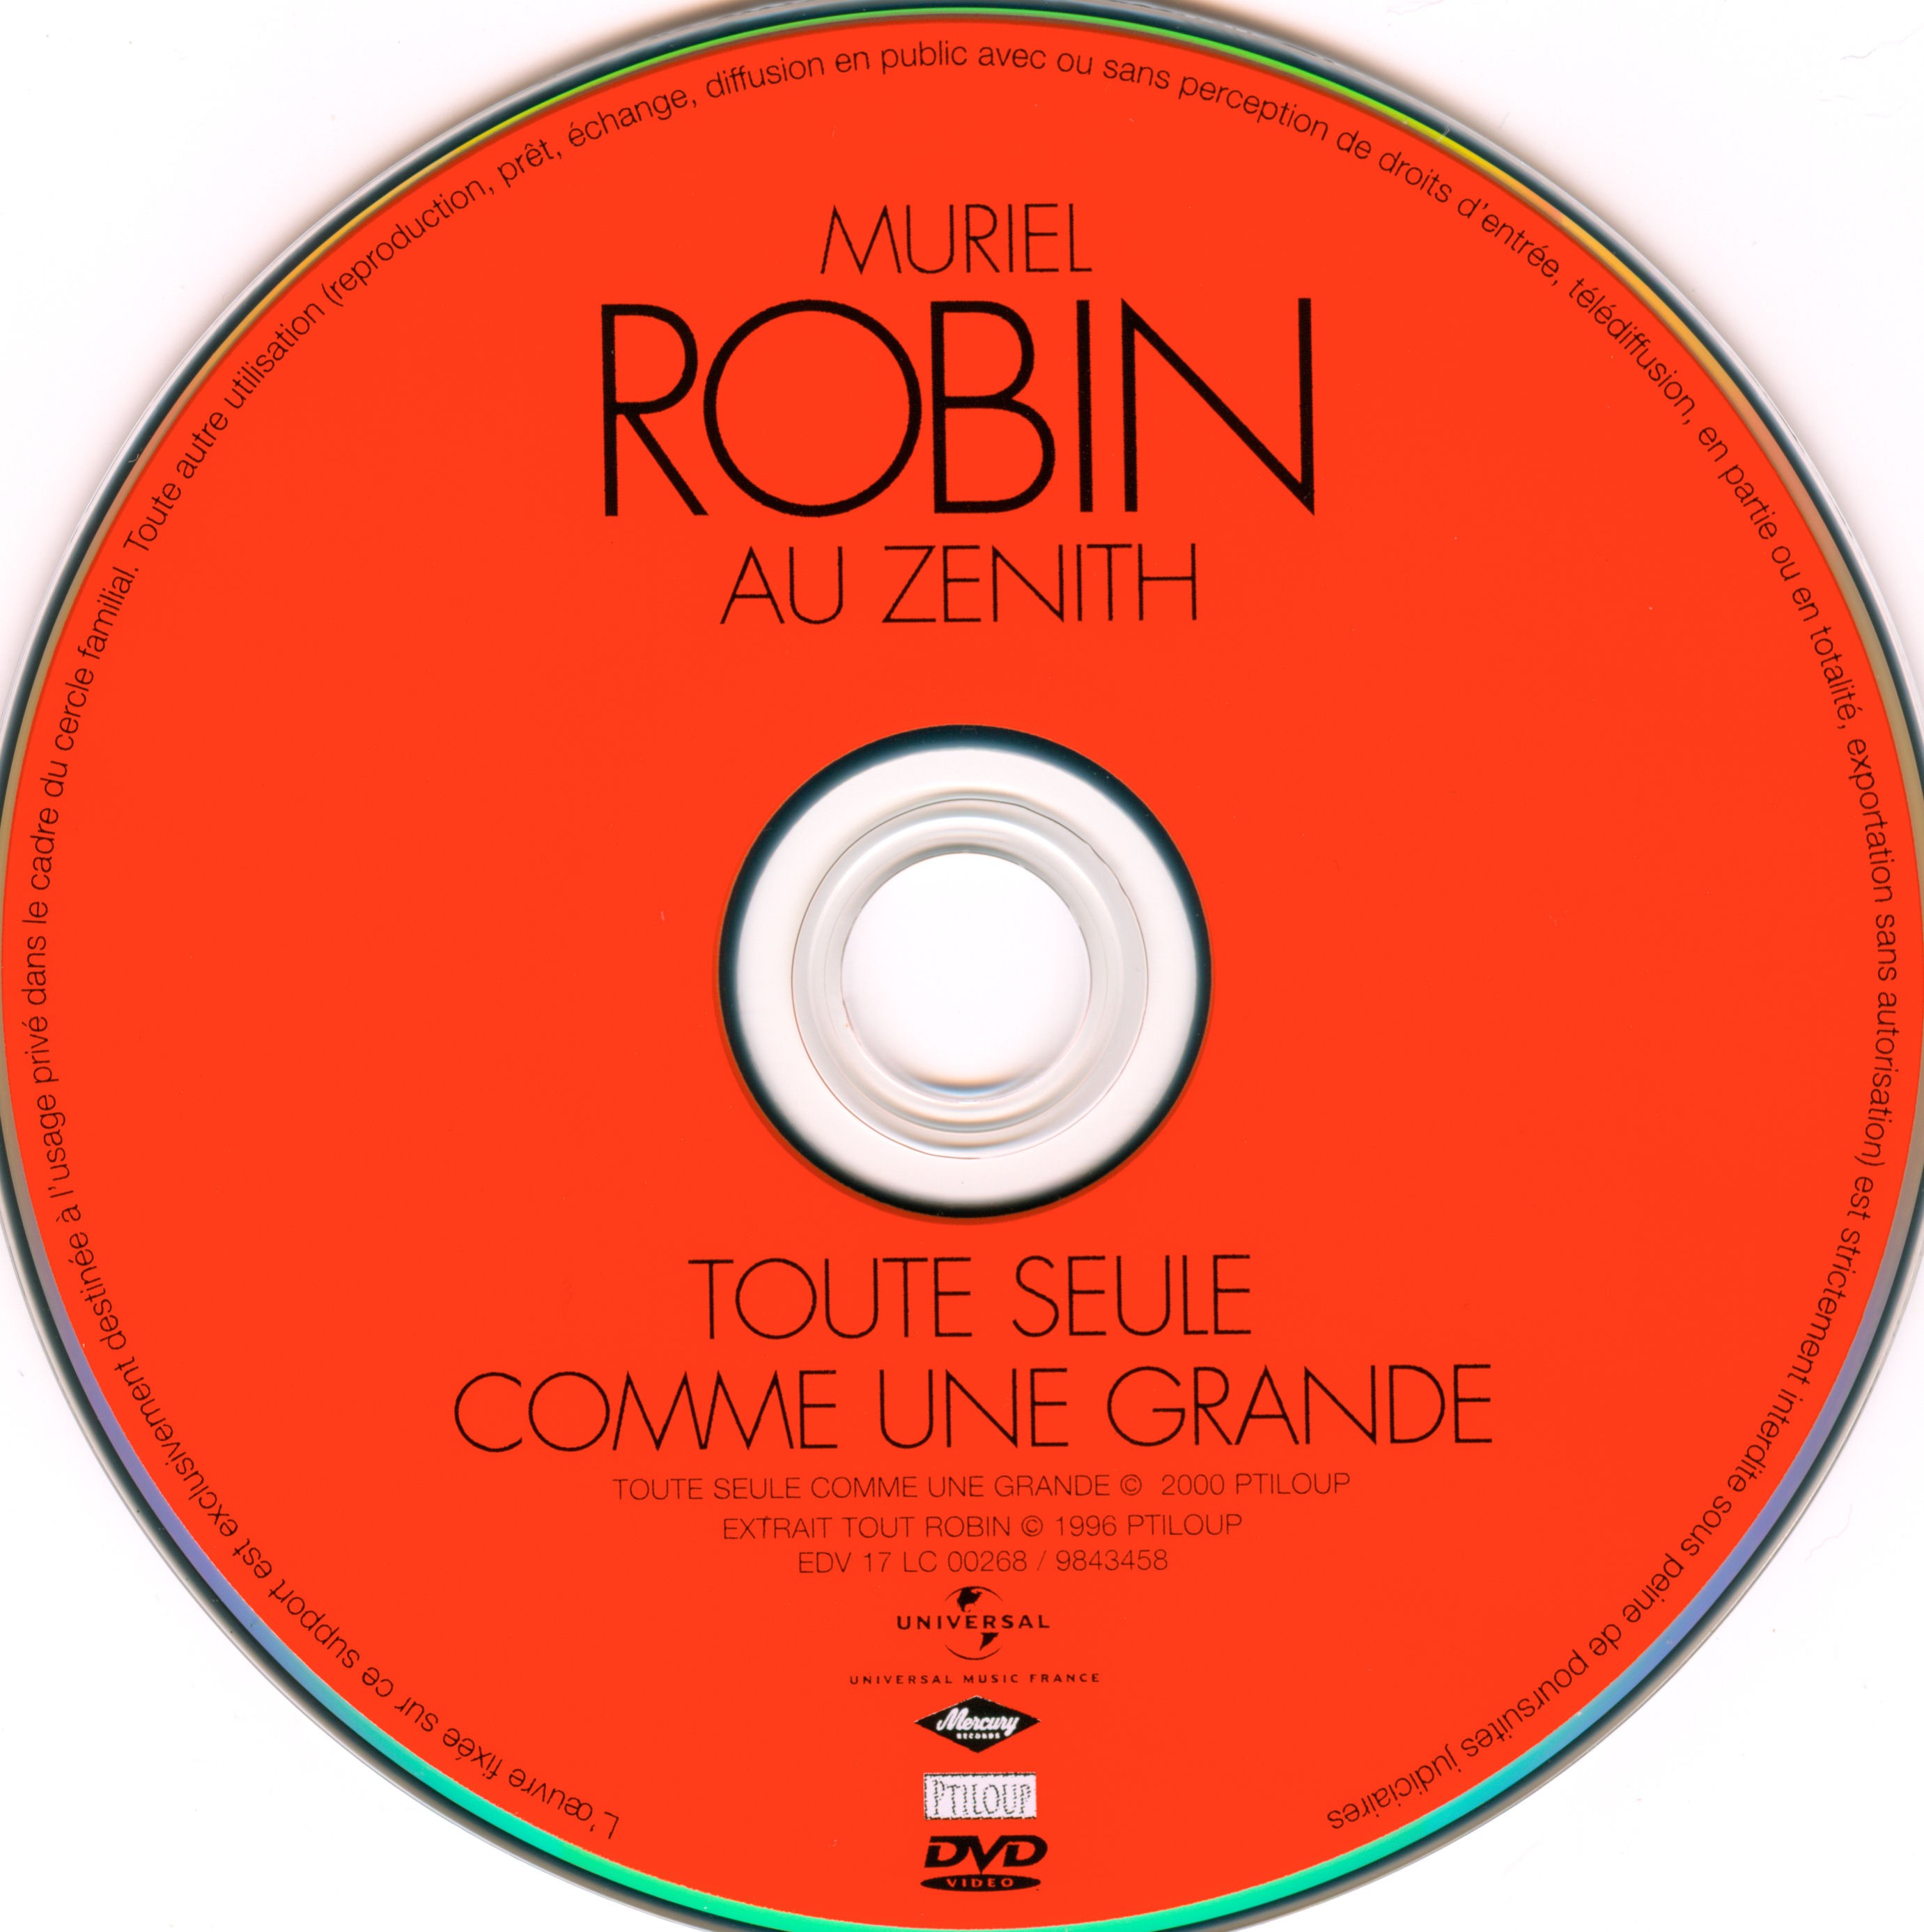 Muriel Robin - Toute seule comme une grande